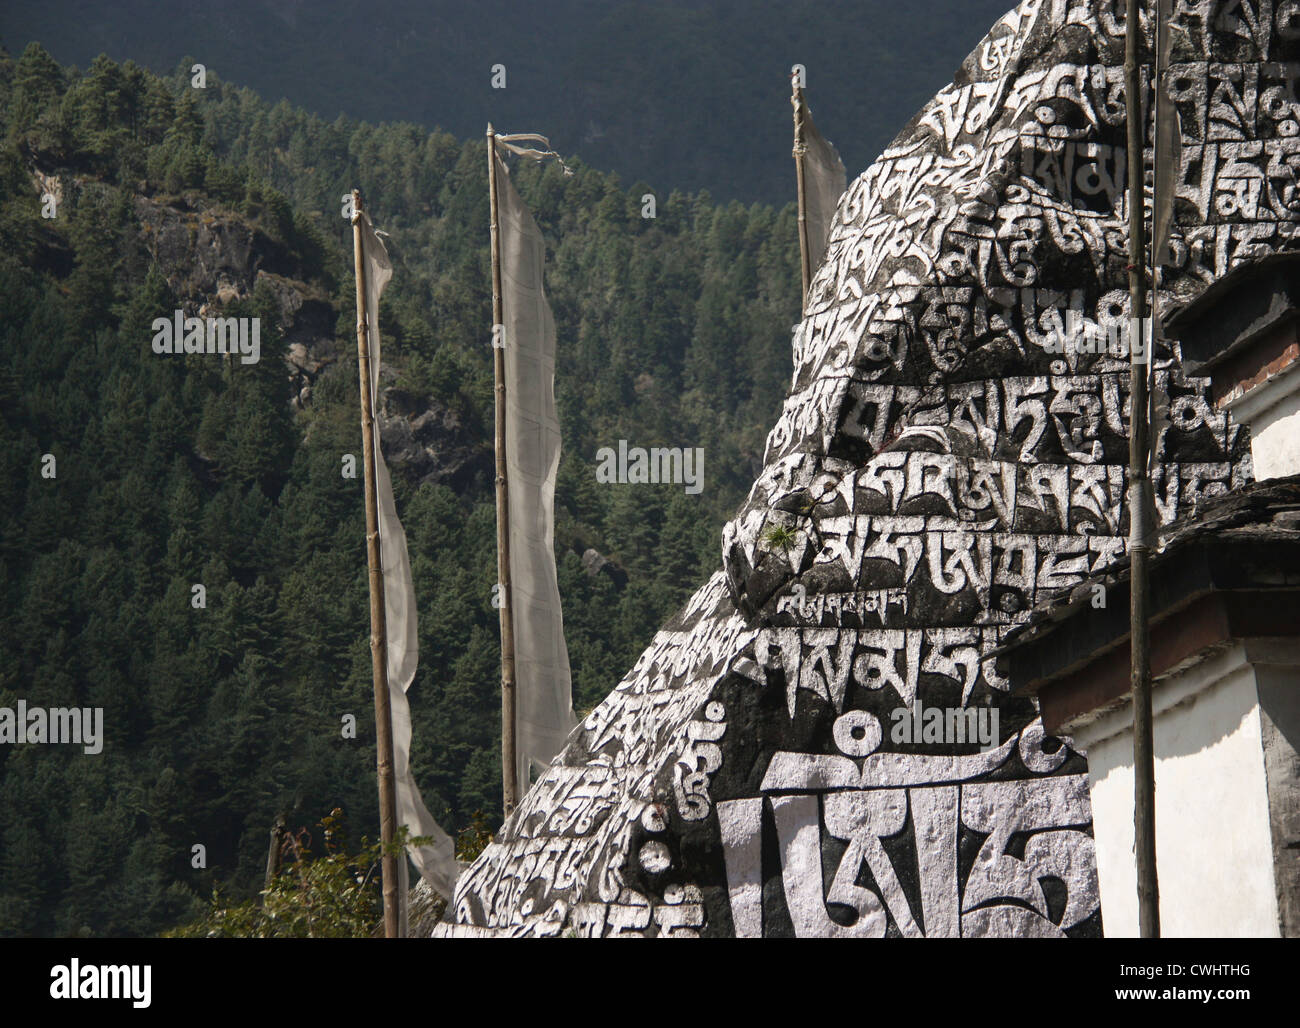 "Om mani padme hum' mantra buddista, spesso trovato scritto sulle pietre, o mani pareti nella regione di Everest, Himalaya, Nepal Foto Stock